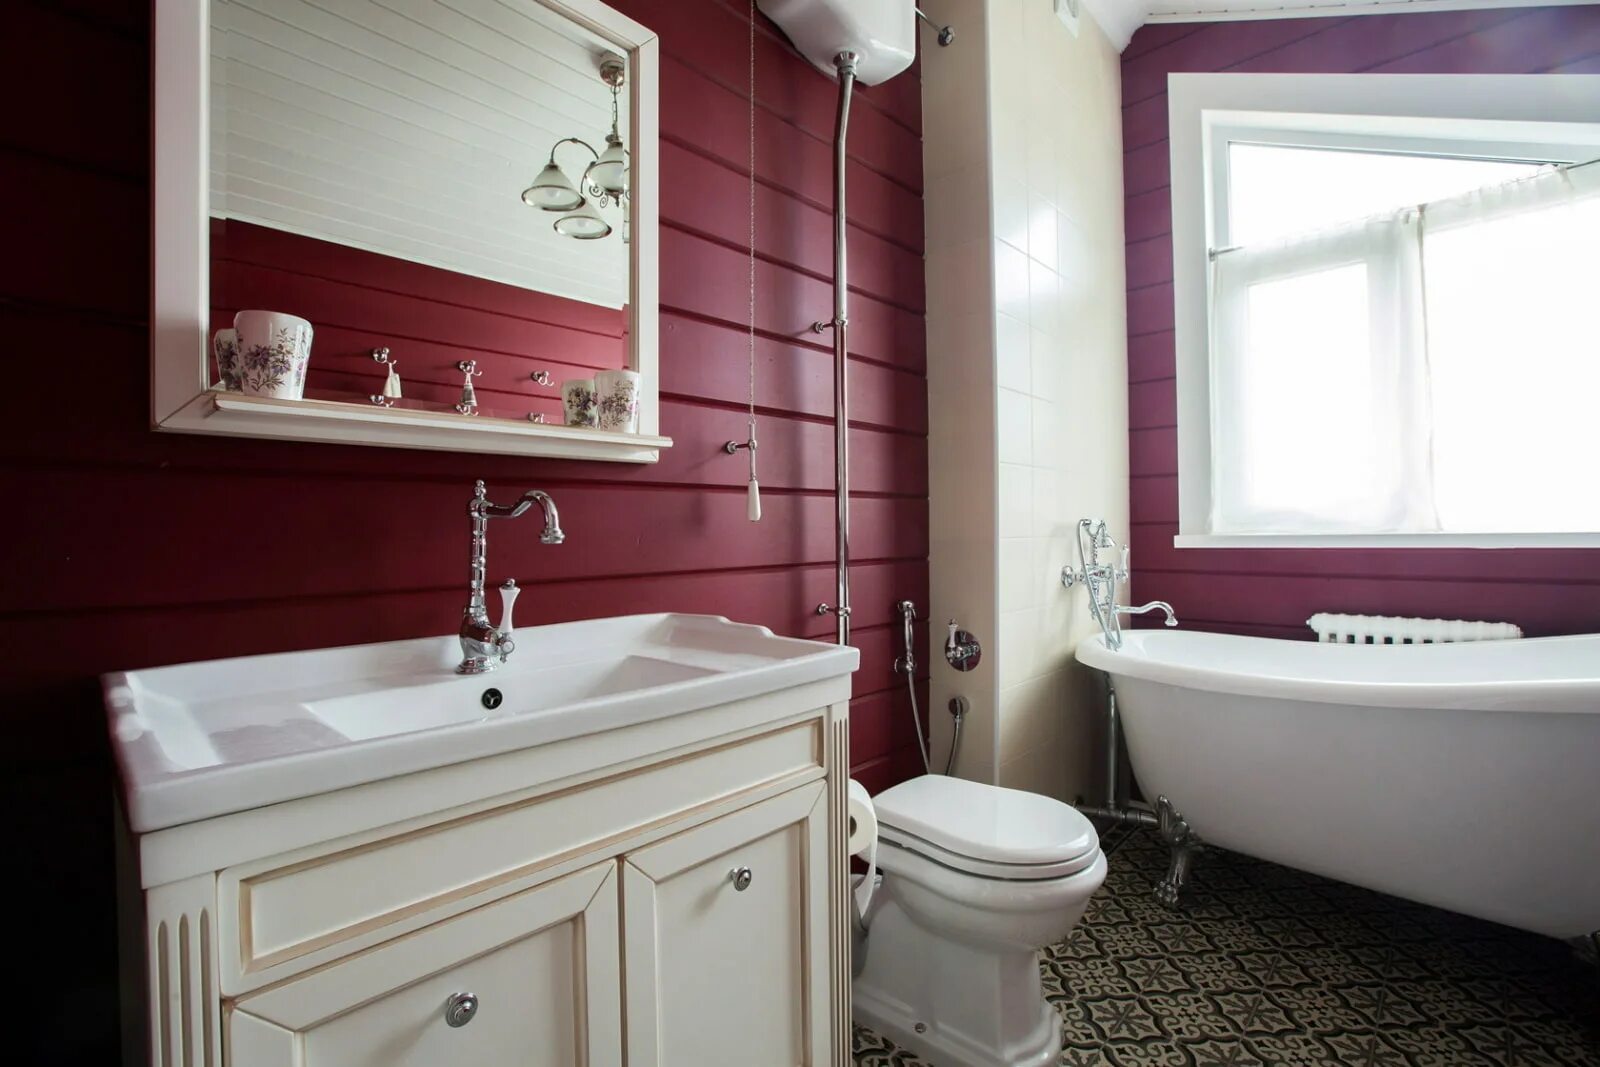 Ванная в бордовом цвете. Ванная в доме. Интерьер ванной комнаты. Бордовые стены в ванной. Изготовление ванных комнат